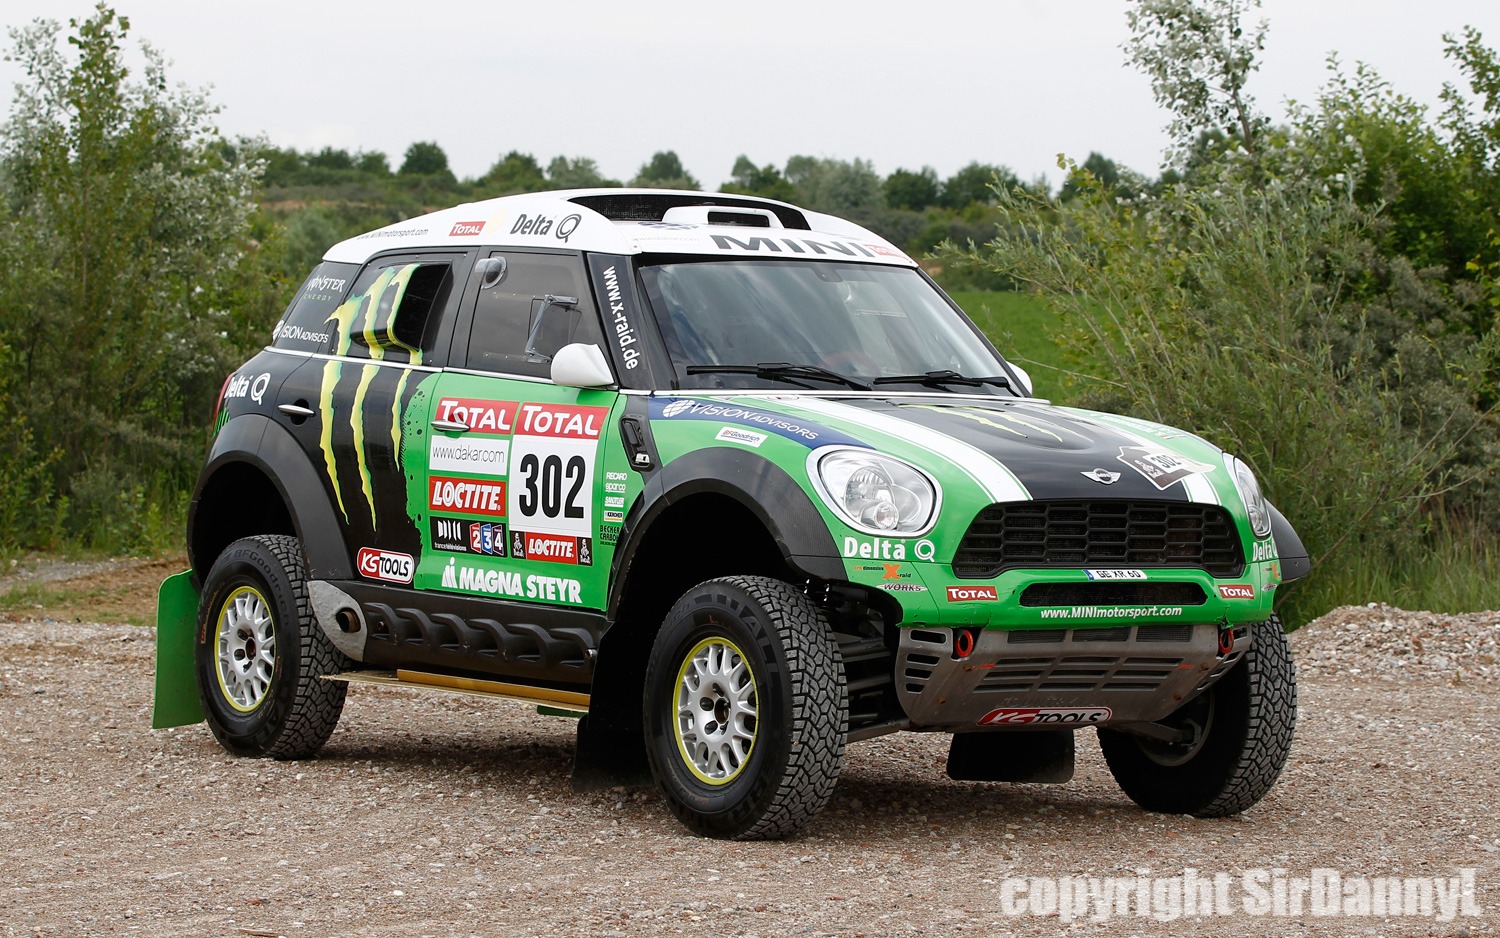 2013-Mini-Countryman-S-ALL4-John-Copper-Works-Monster-Energy-Dakar-Rally-vehicles-image-4.jpg